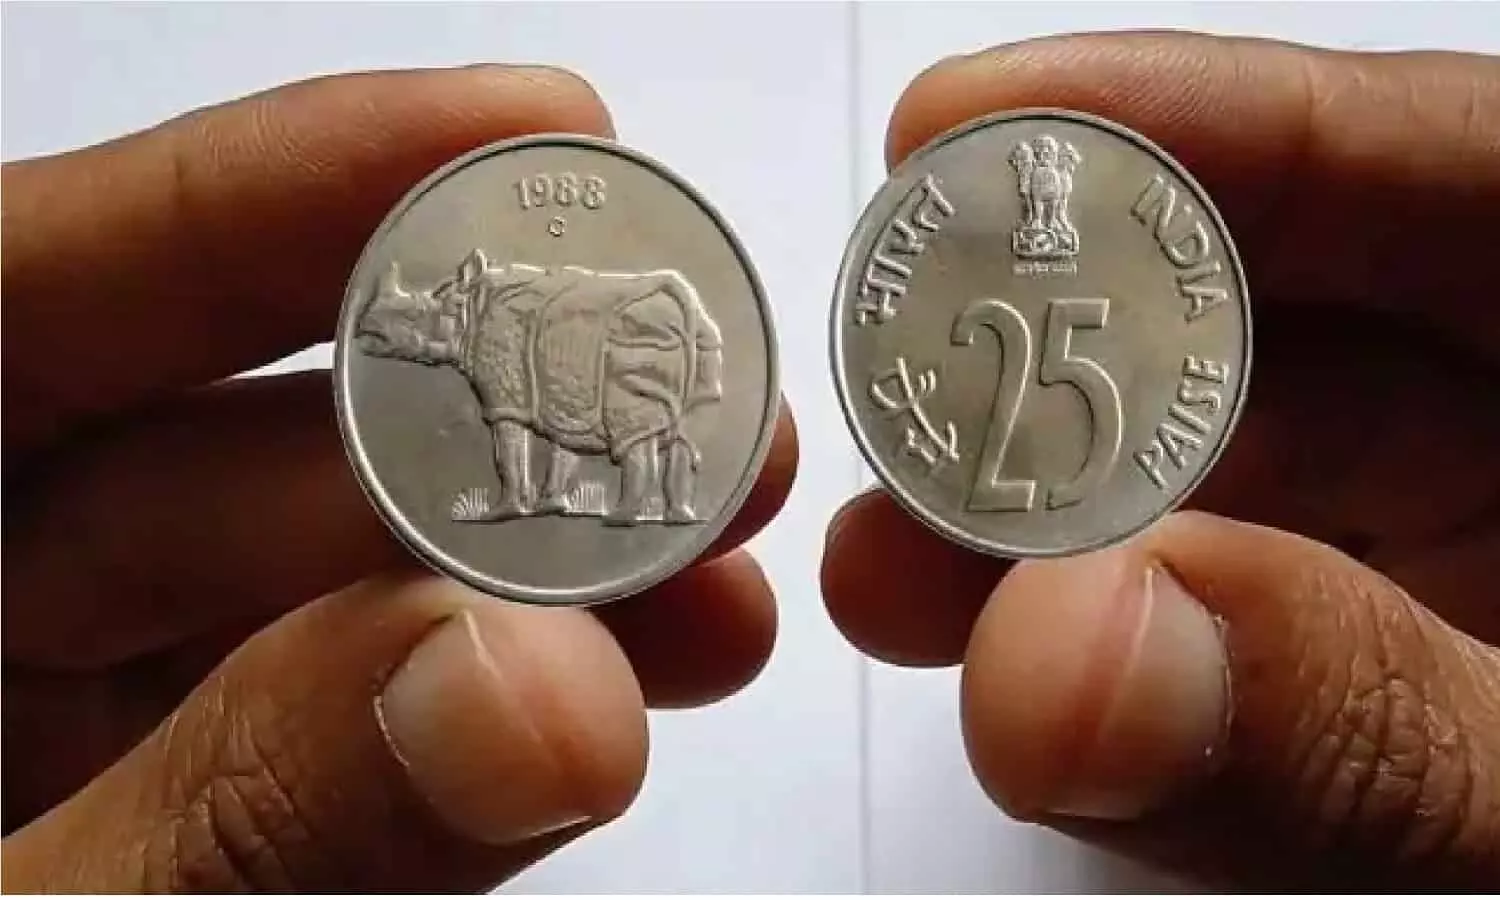 Crorepati 25 Paise Coin: 1988 में बना गैंडे वाला 25 पैसे का सिक्का आपको बना  देगा करोड़पति, घर में होगी पैसो की बारिश | Crorepati 25 Paise Coin: 25 paise  coin with